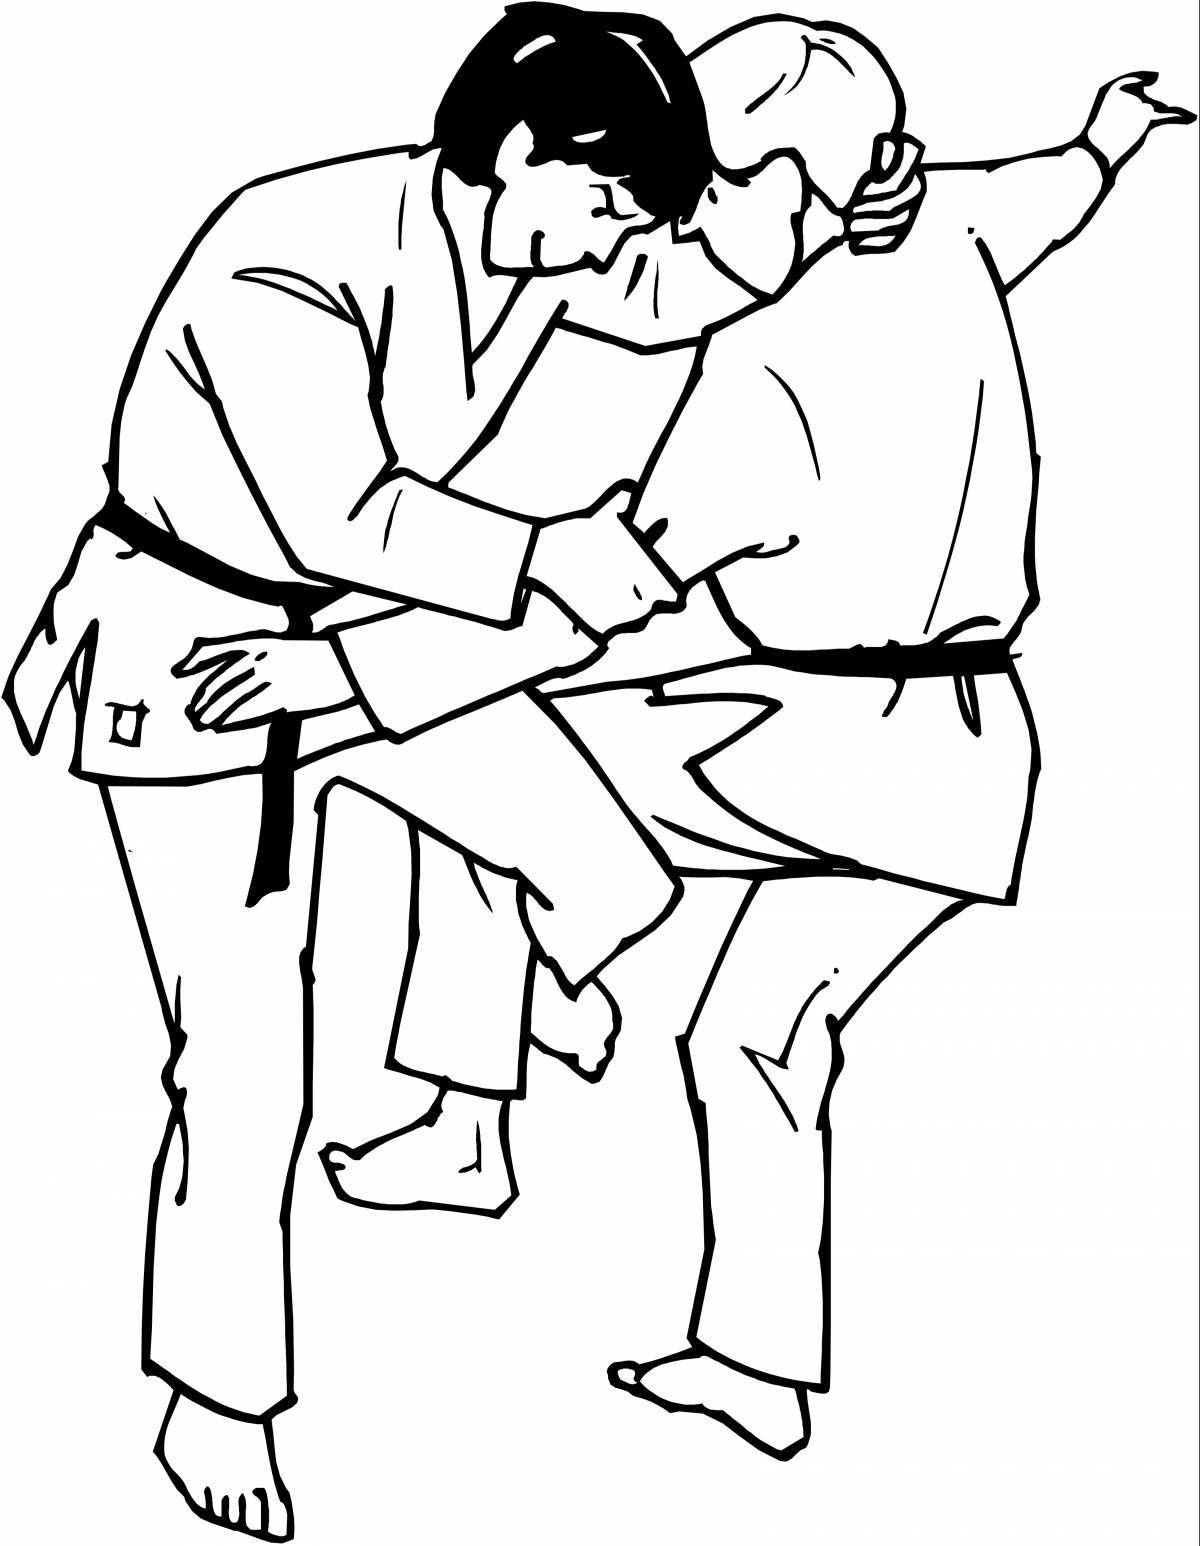 Judo coloring page